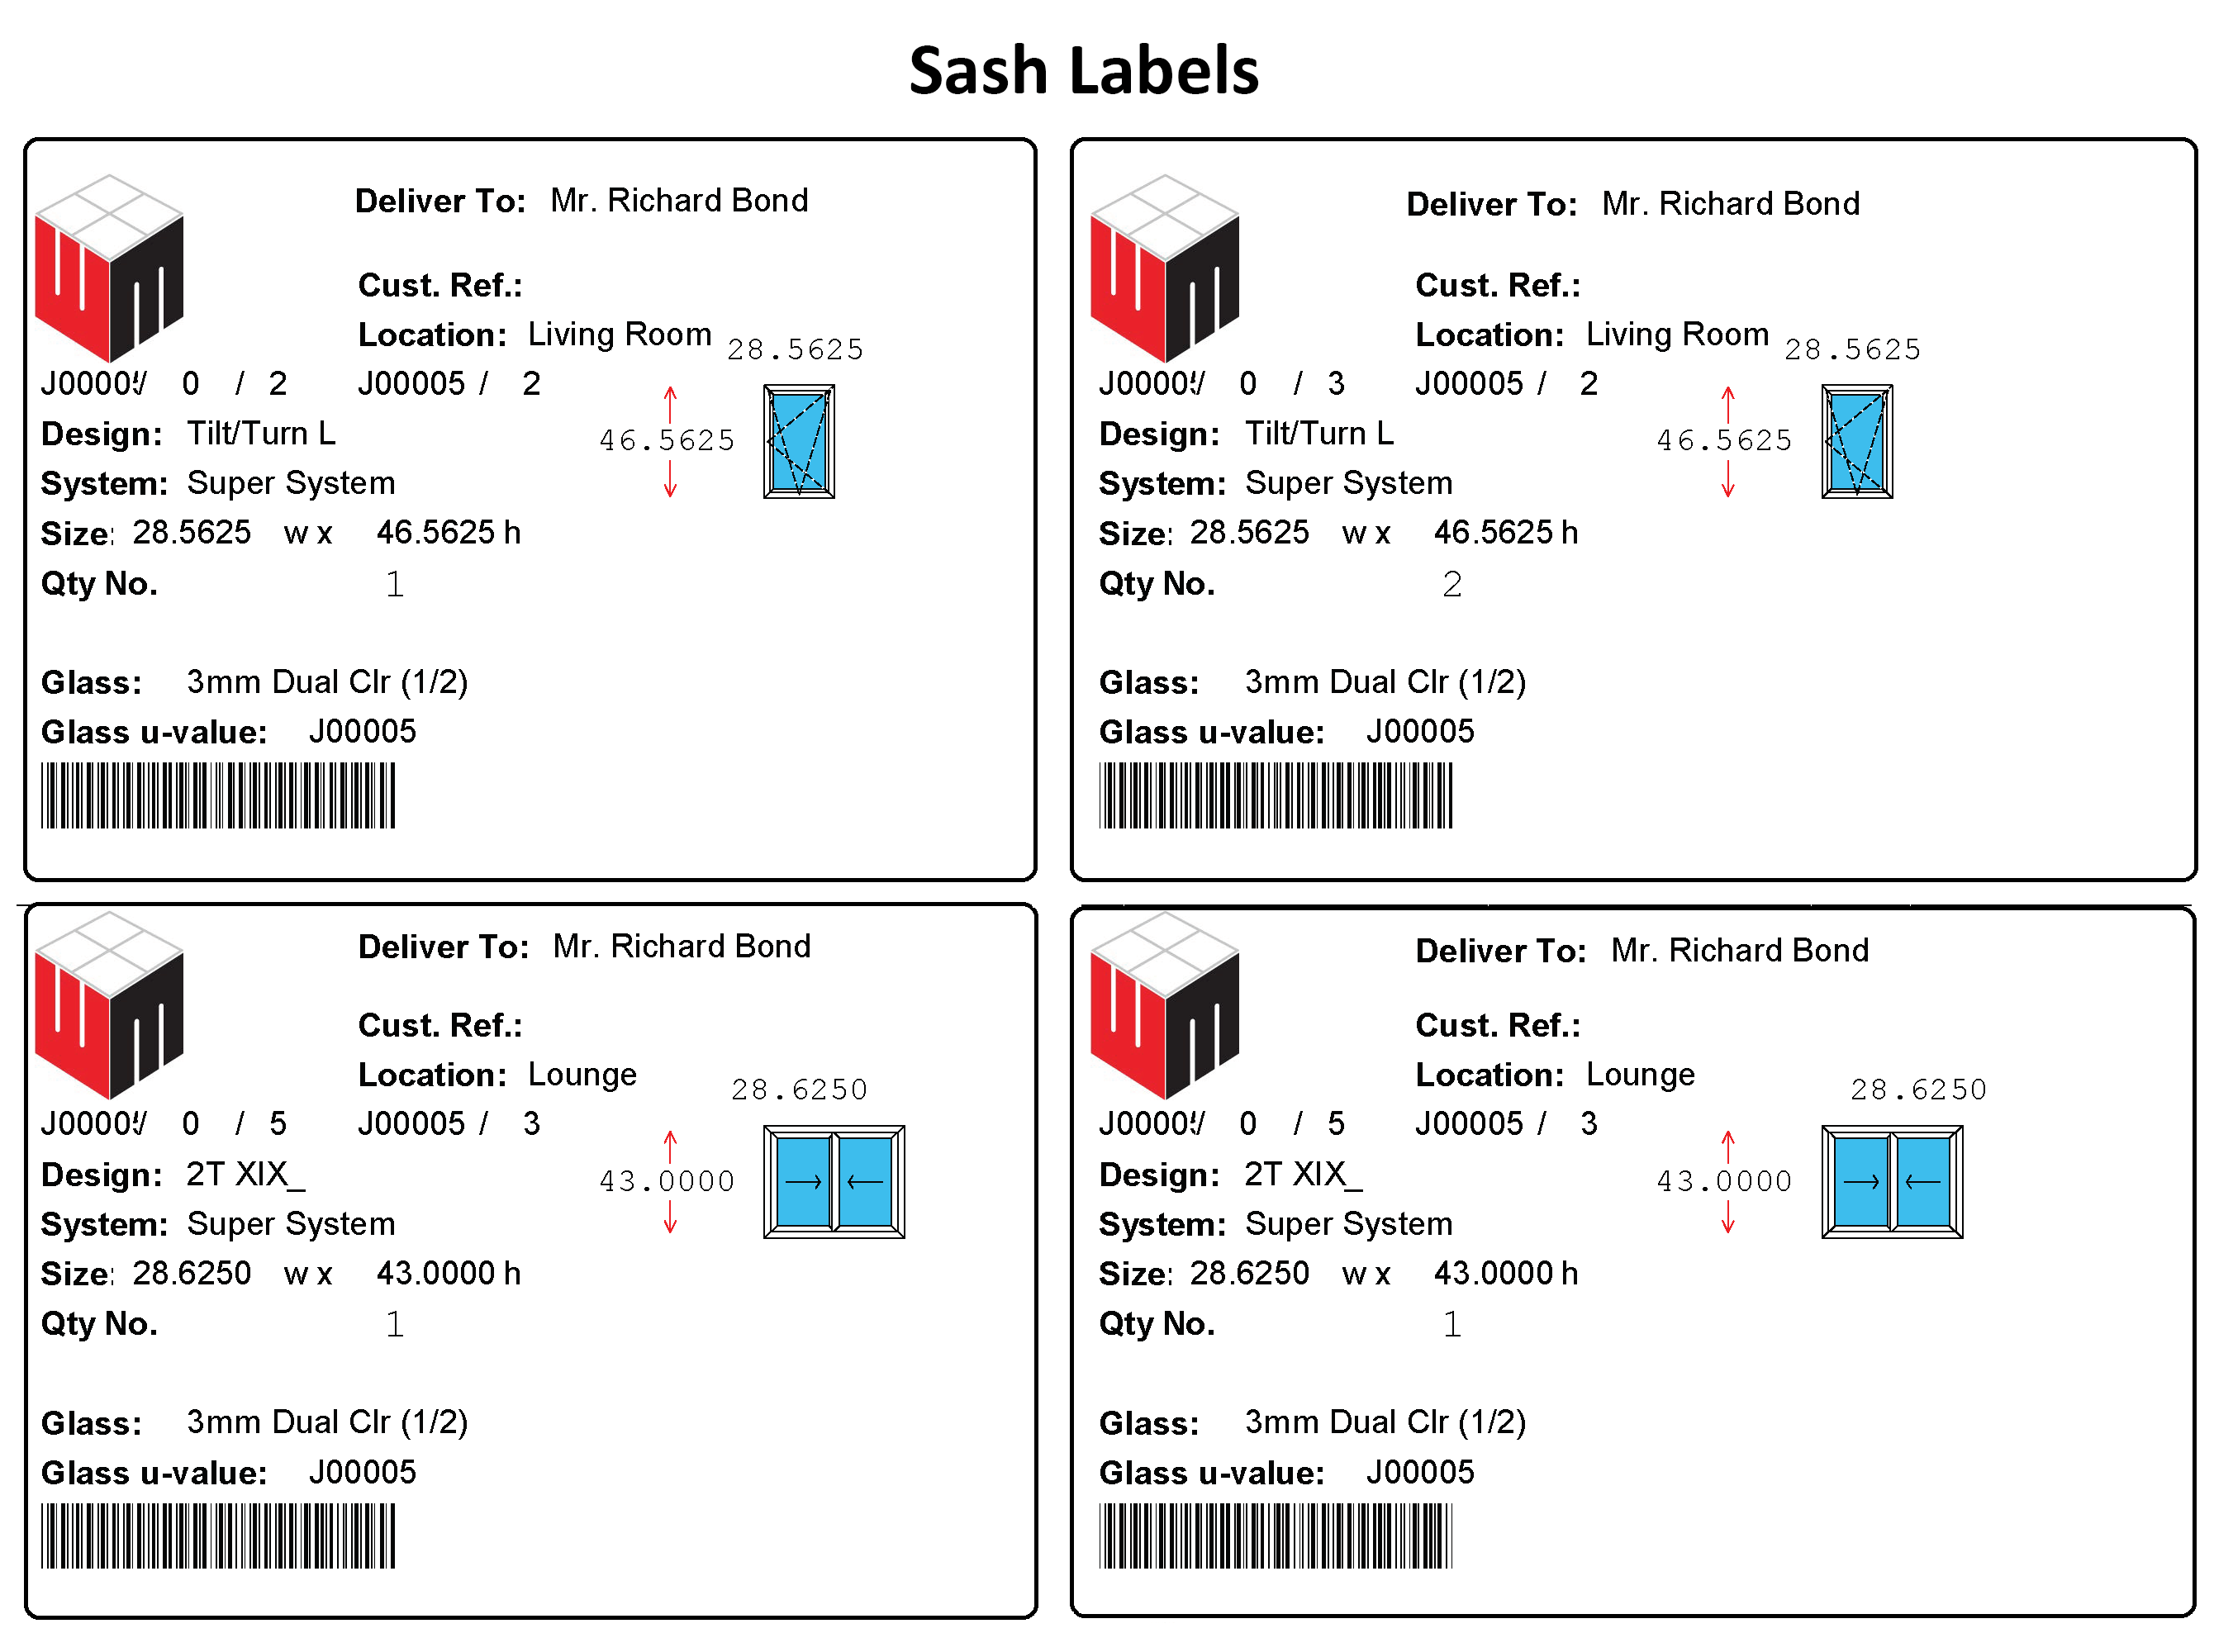 Profile Labels & Sash Labels